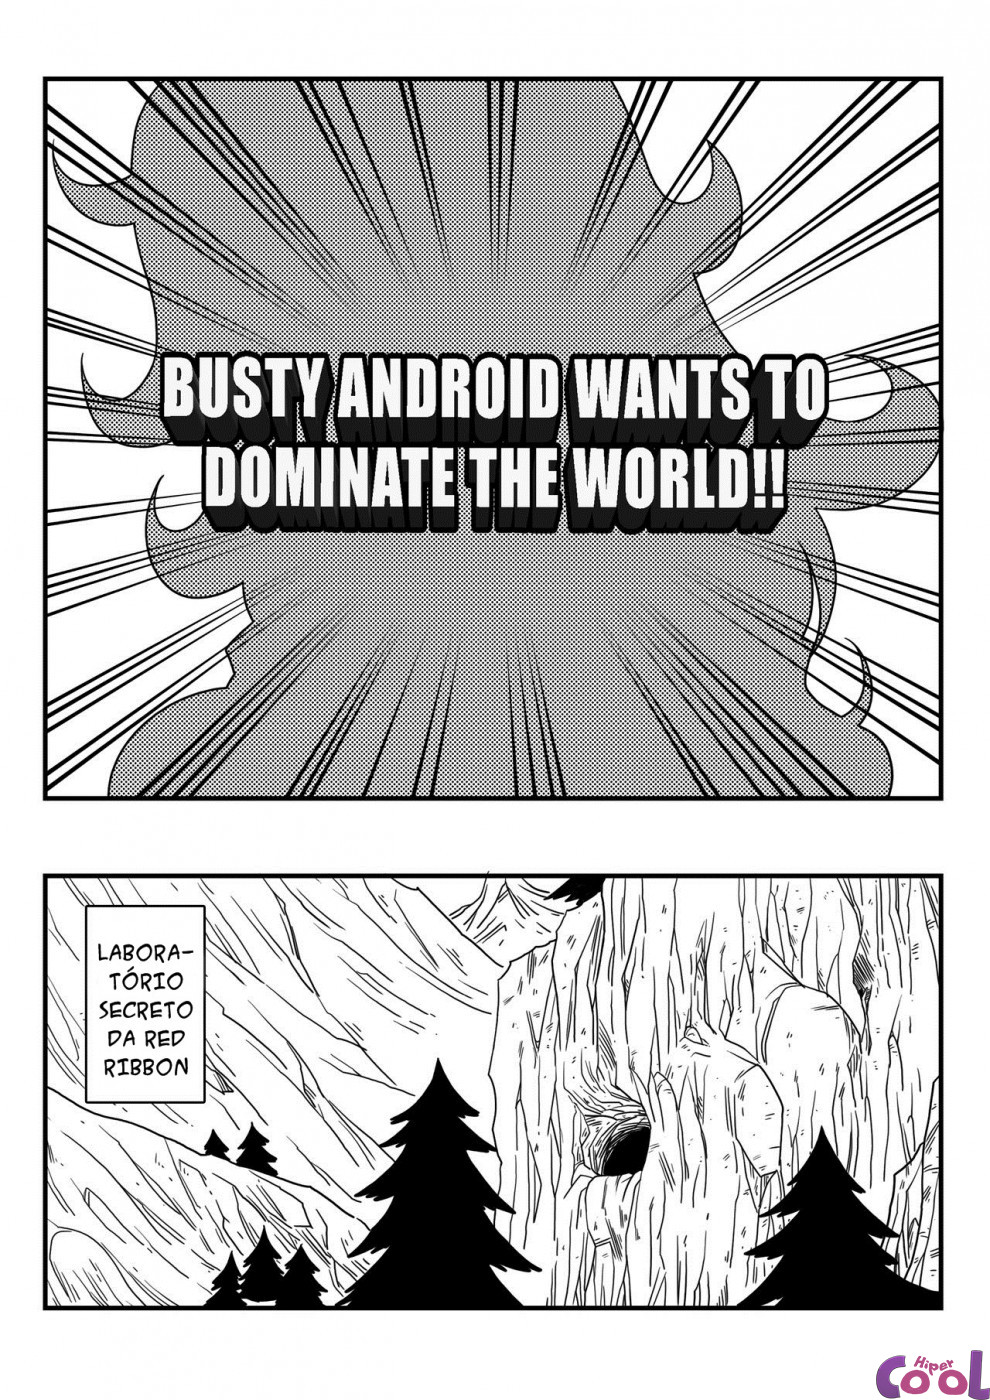 Hentai Android 21 - Dragon Ball Paródia de Sexo